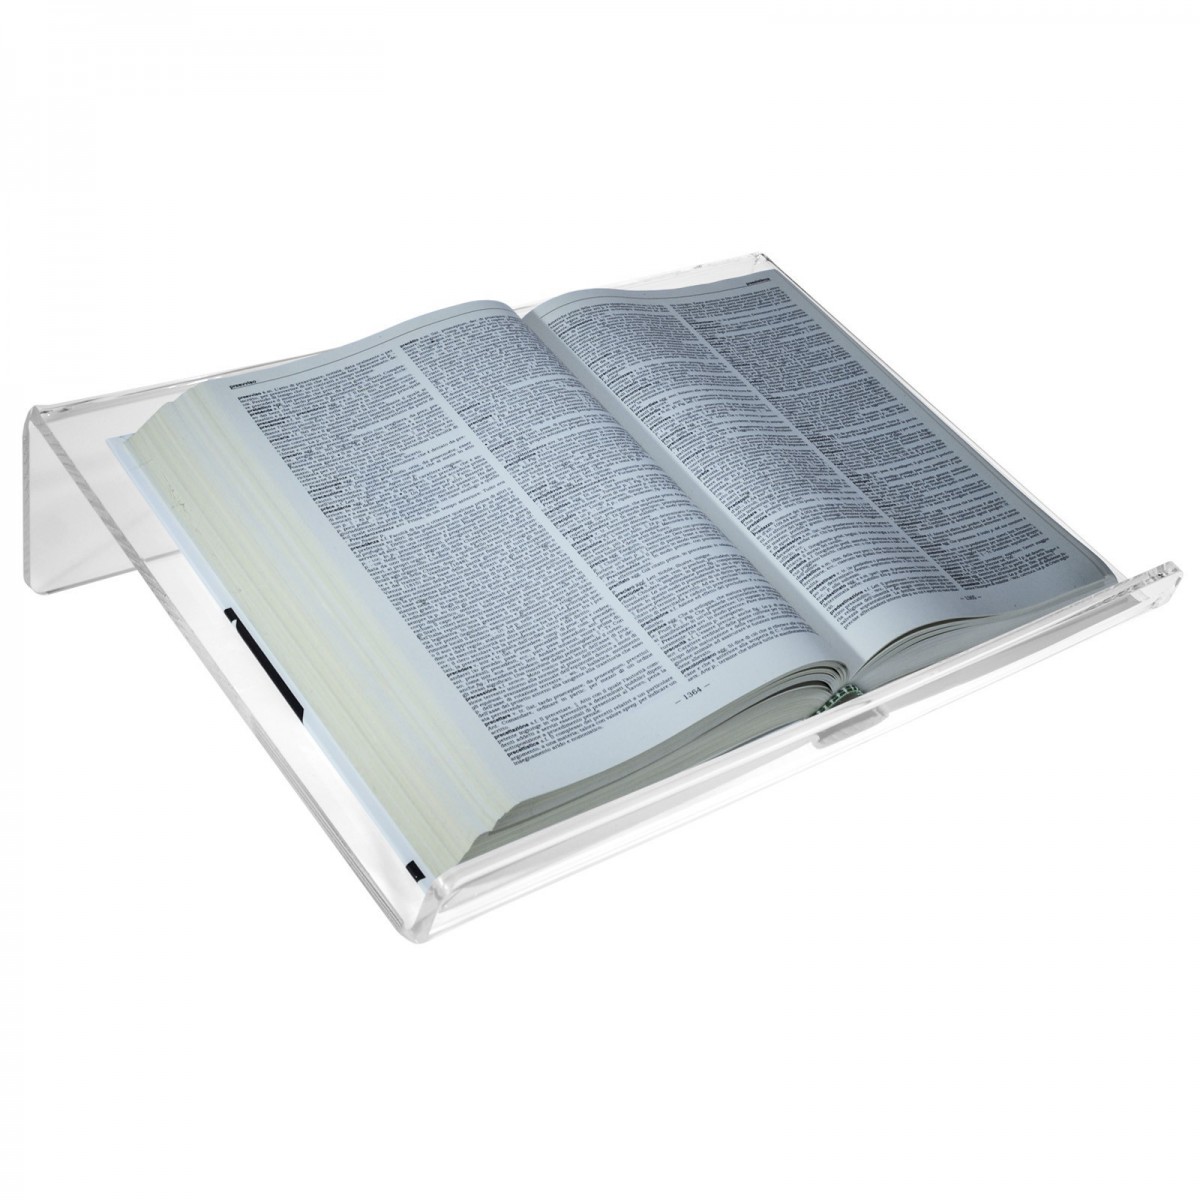 E-576 LEG - Leggio da tavolo in plexiglass trasparente con ripiano inclinato - CM(LxPxH): 45x34x10